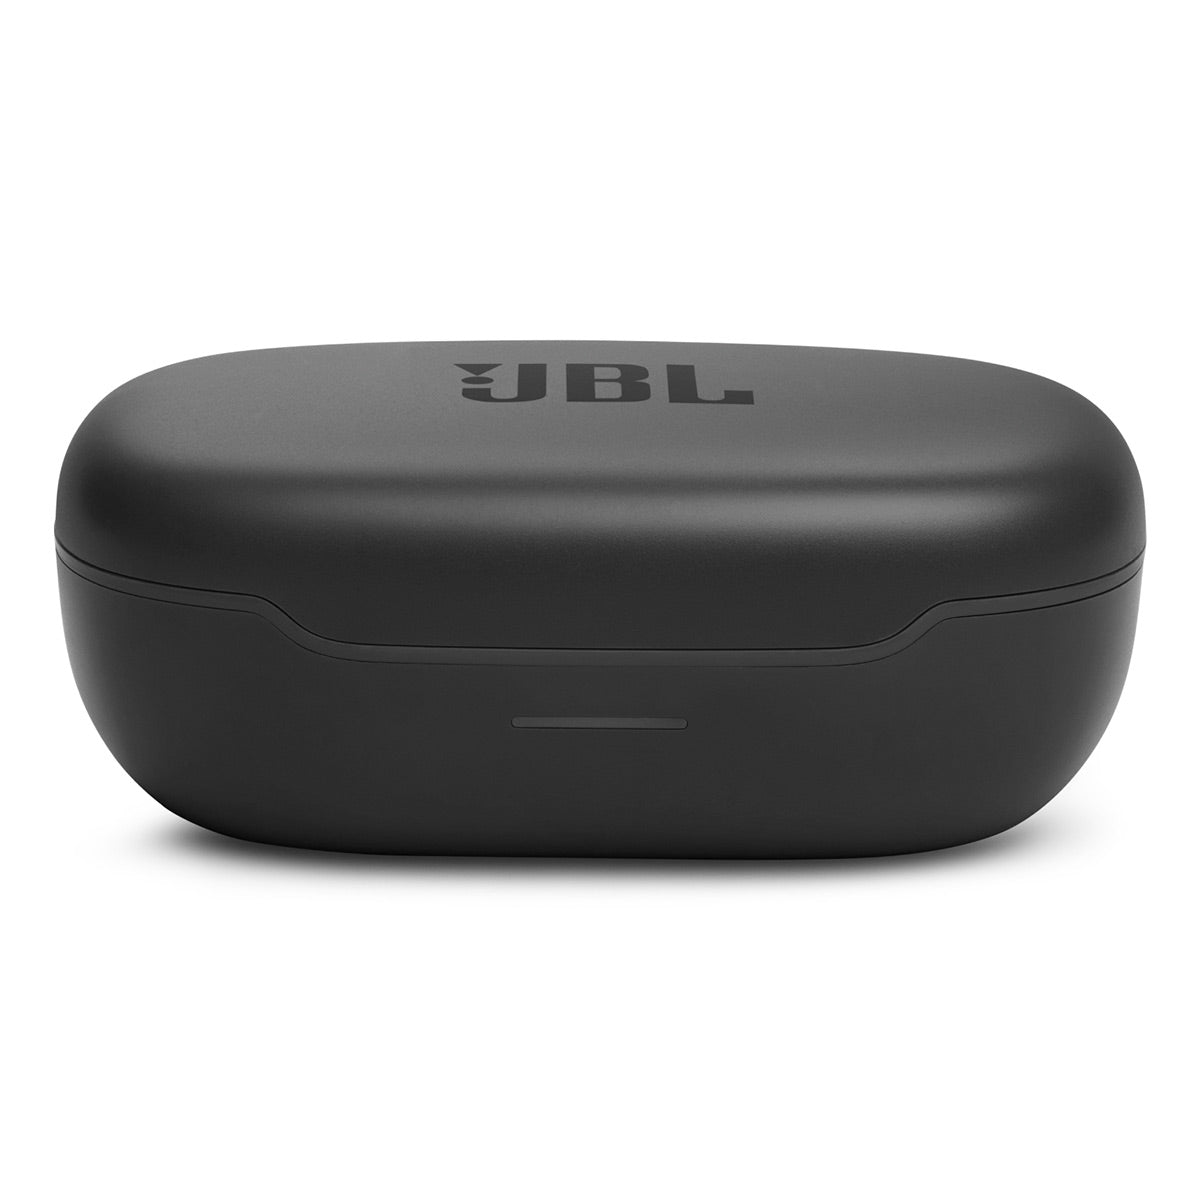 JBL Endurance Peak 3 Dust and Waterproof True Wireless Active Earbuds (Black)